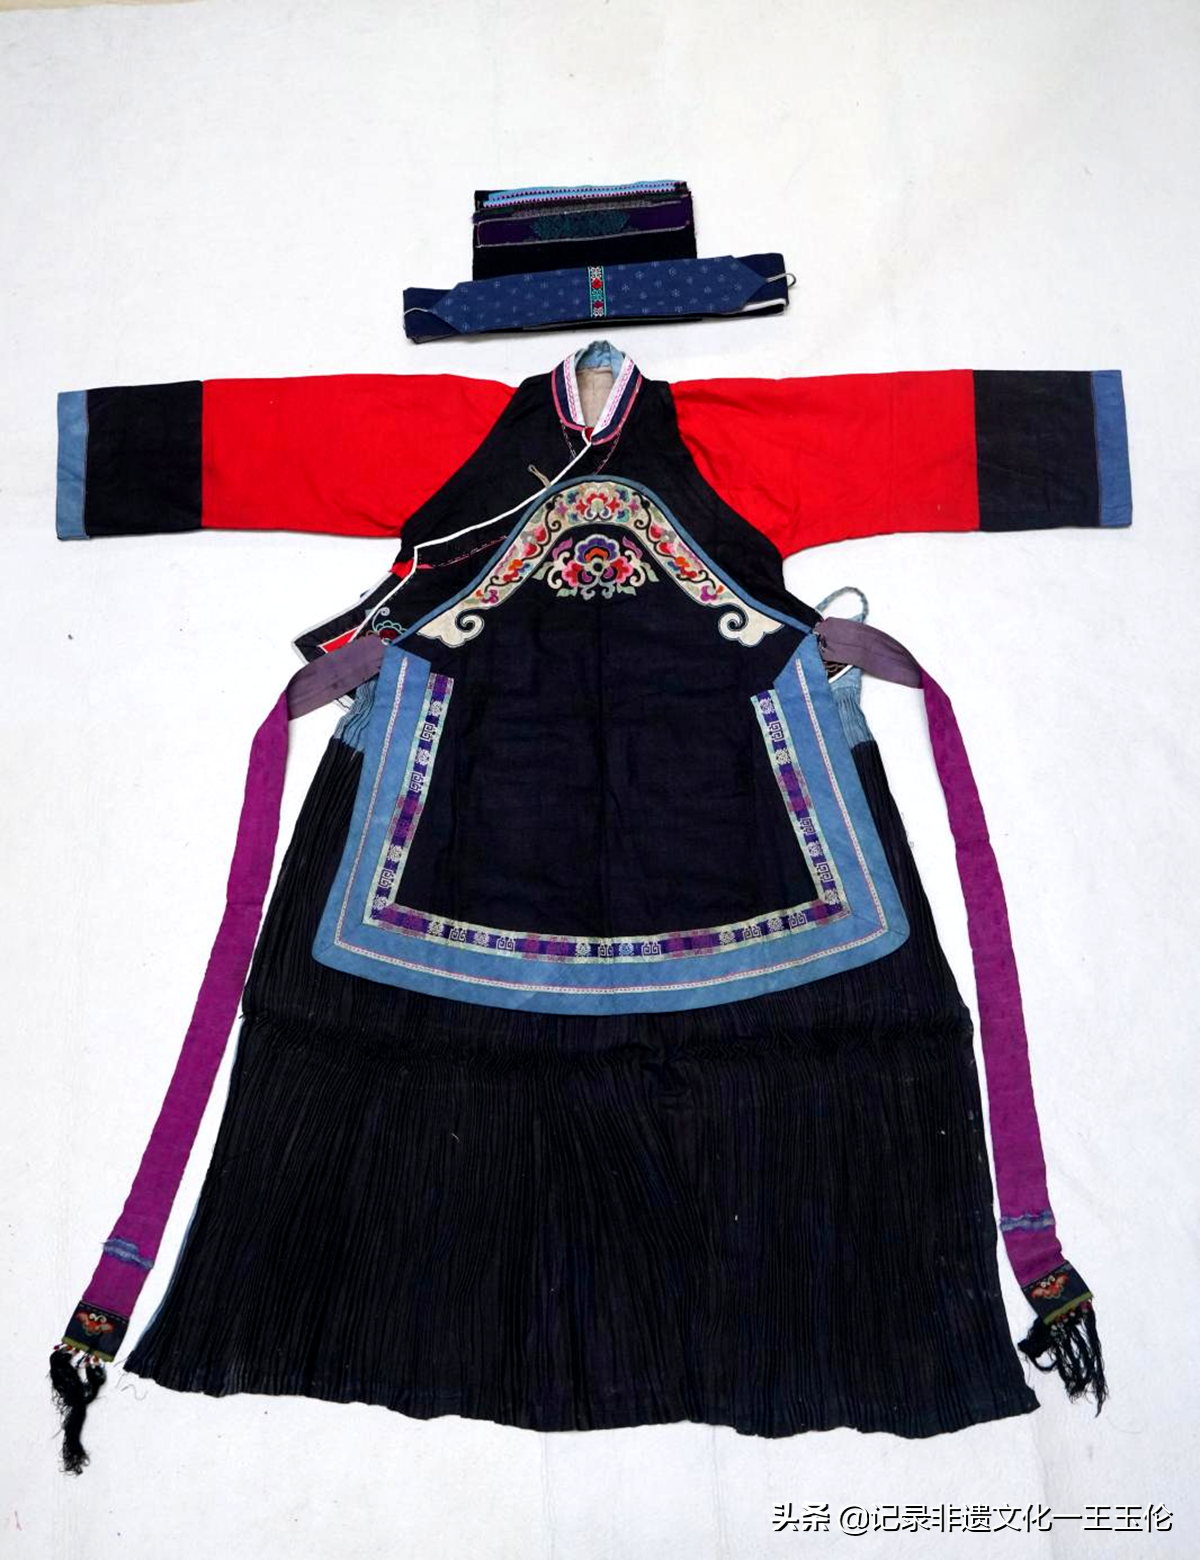 礼制衣承——布依族服饰展在贵州省非遗博览馆开幕